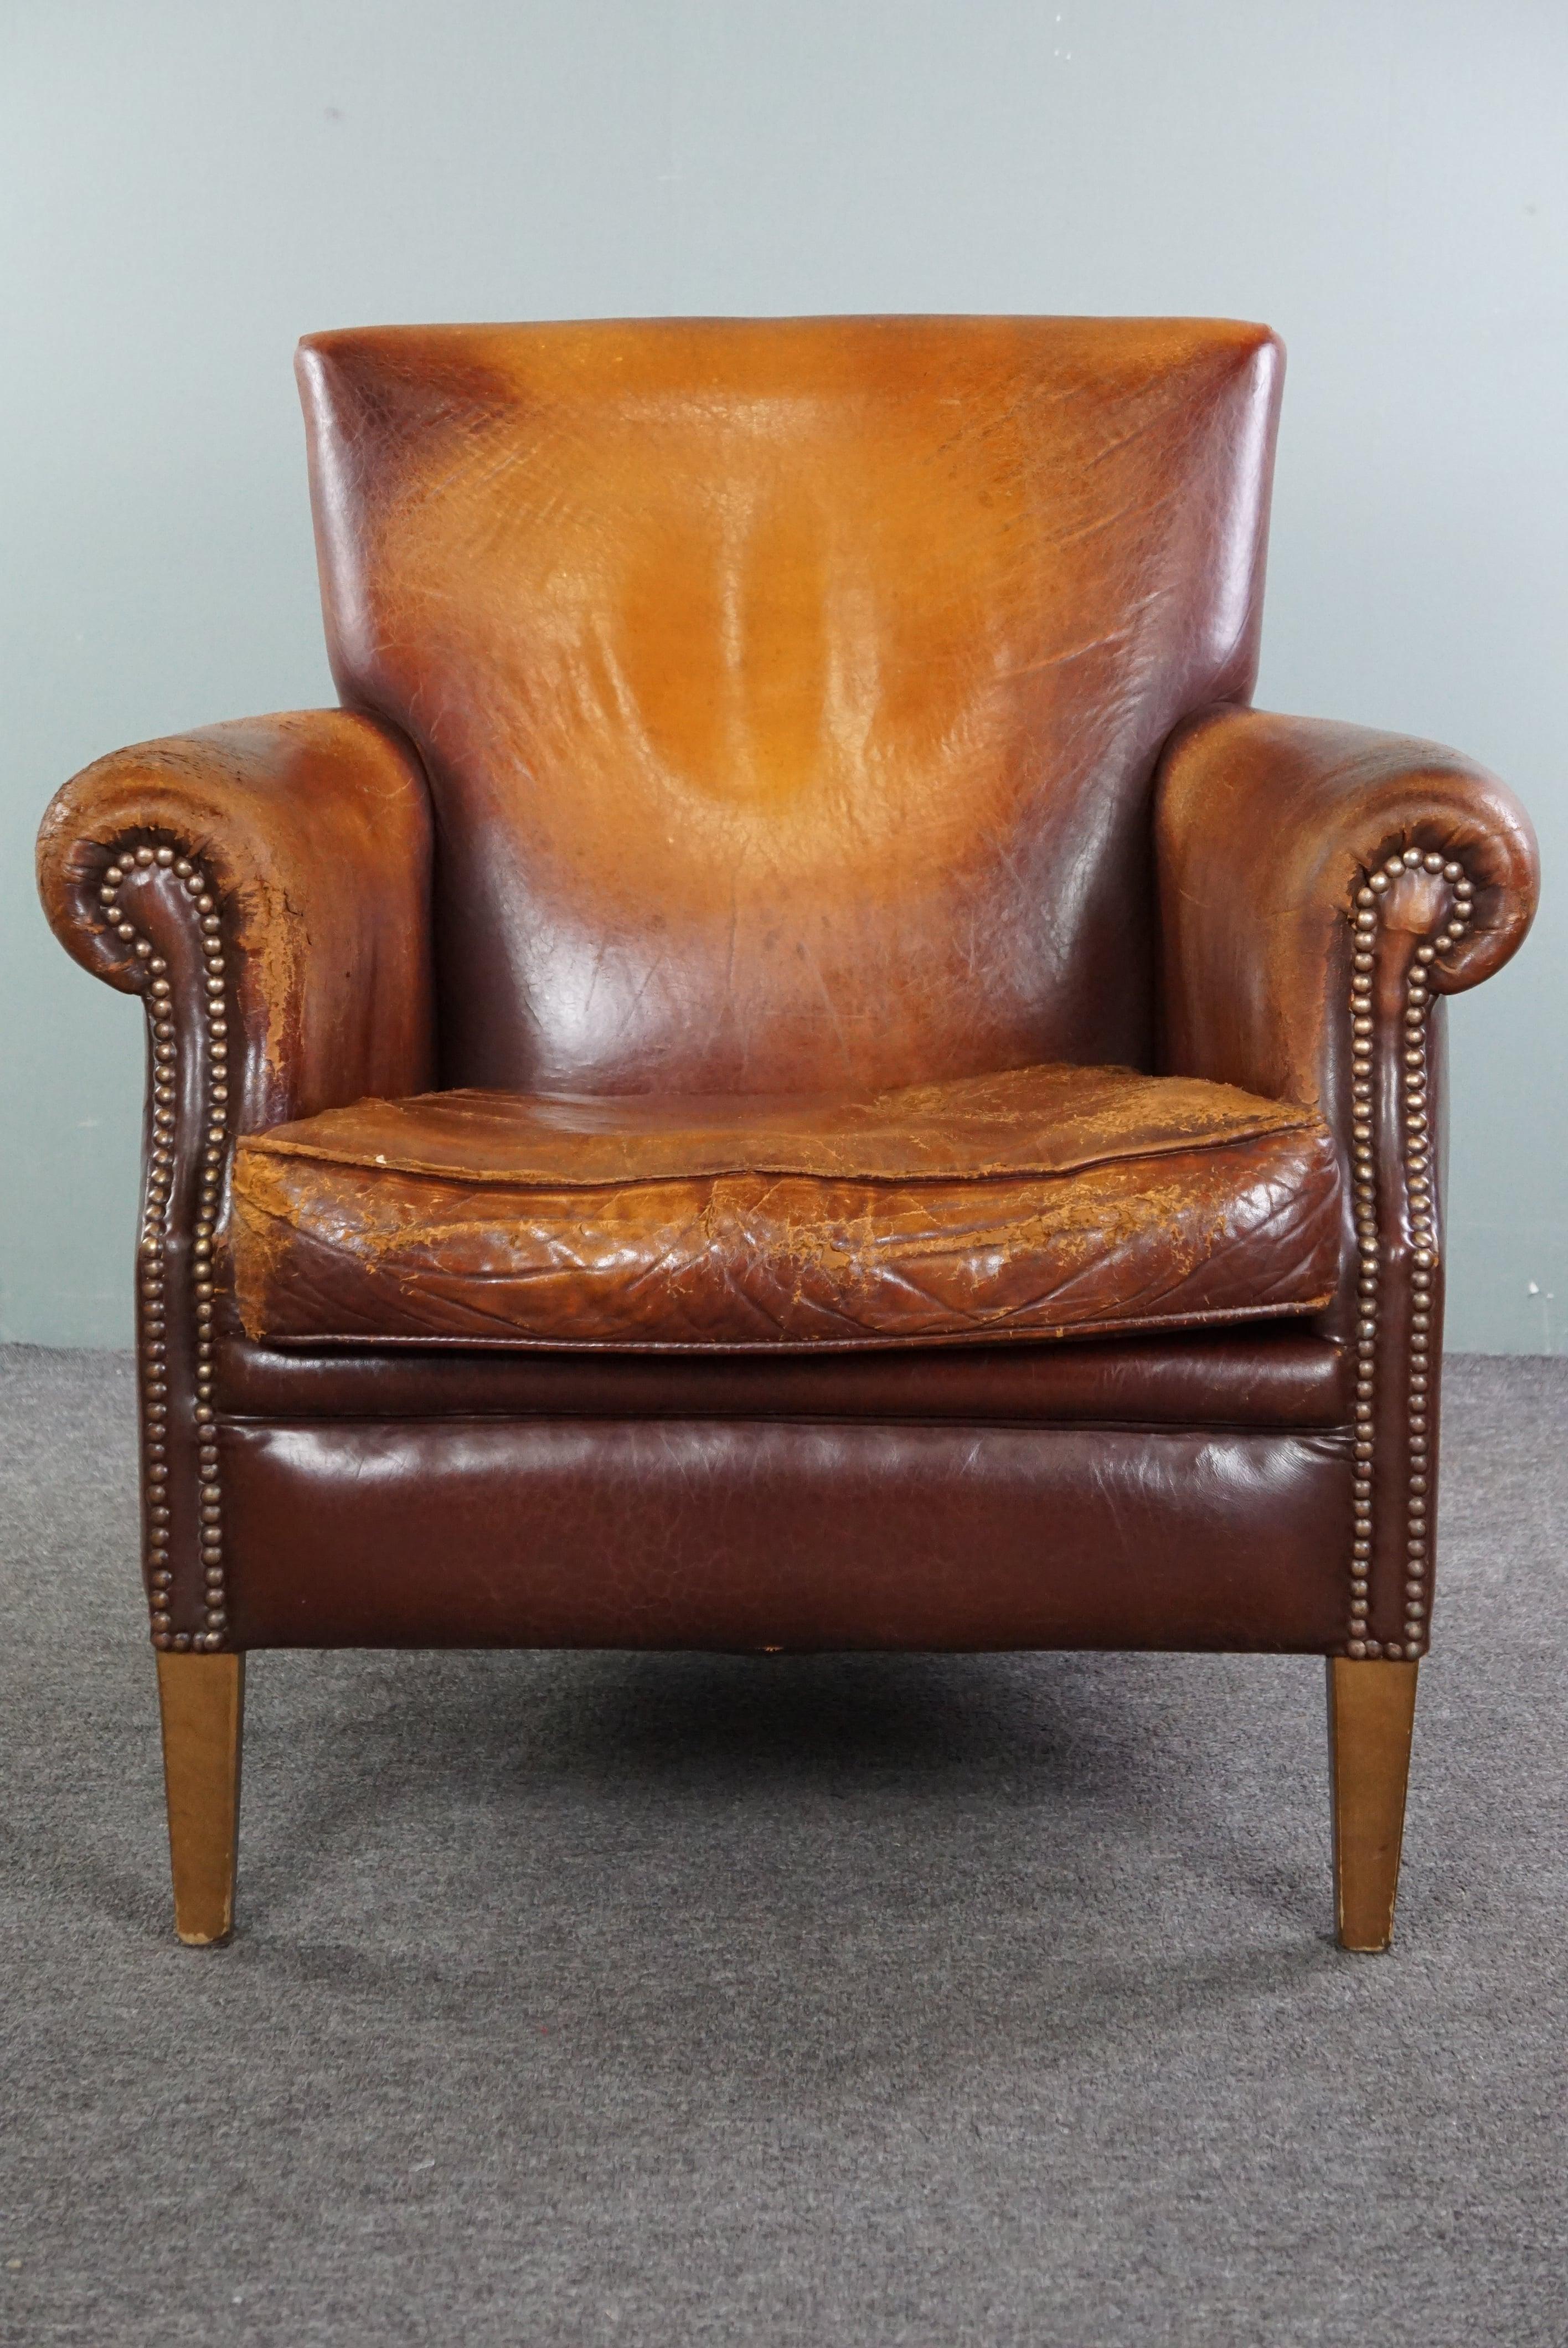 Nous vous proposons ce fauteuil en cuir de mouton, qui présente beaucoup de patine et de caractère. N'est-ce pas génial, n'est-ce pas ? Un fauteuil en cuir de mouton, à l'aspect délicieusement usé par le temps, est précisément ce qui ajouterait